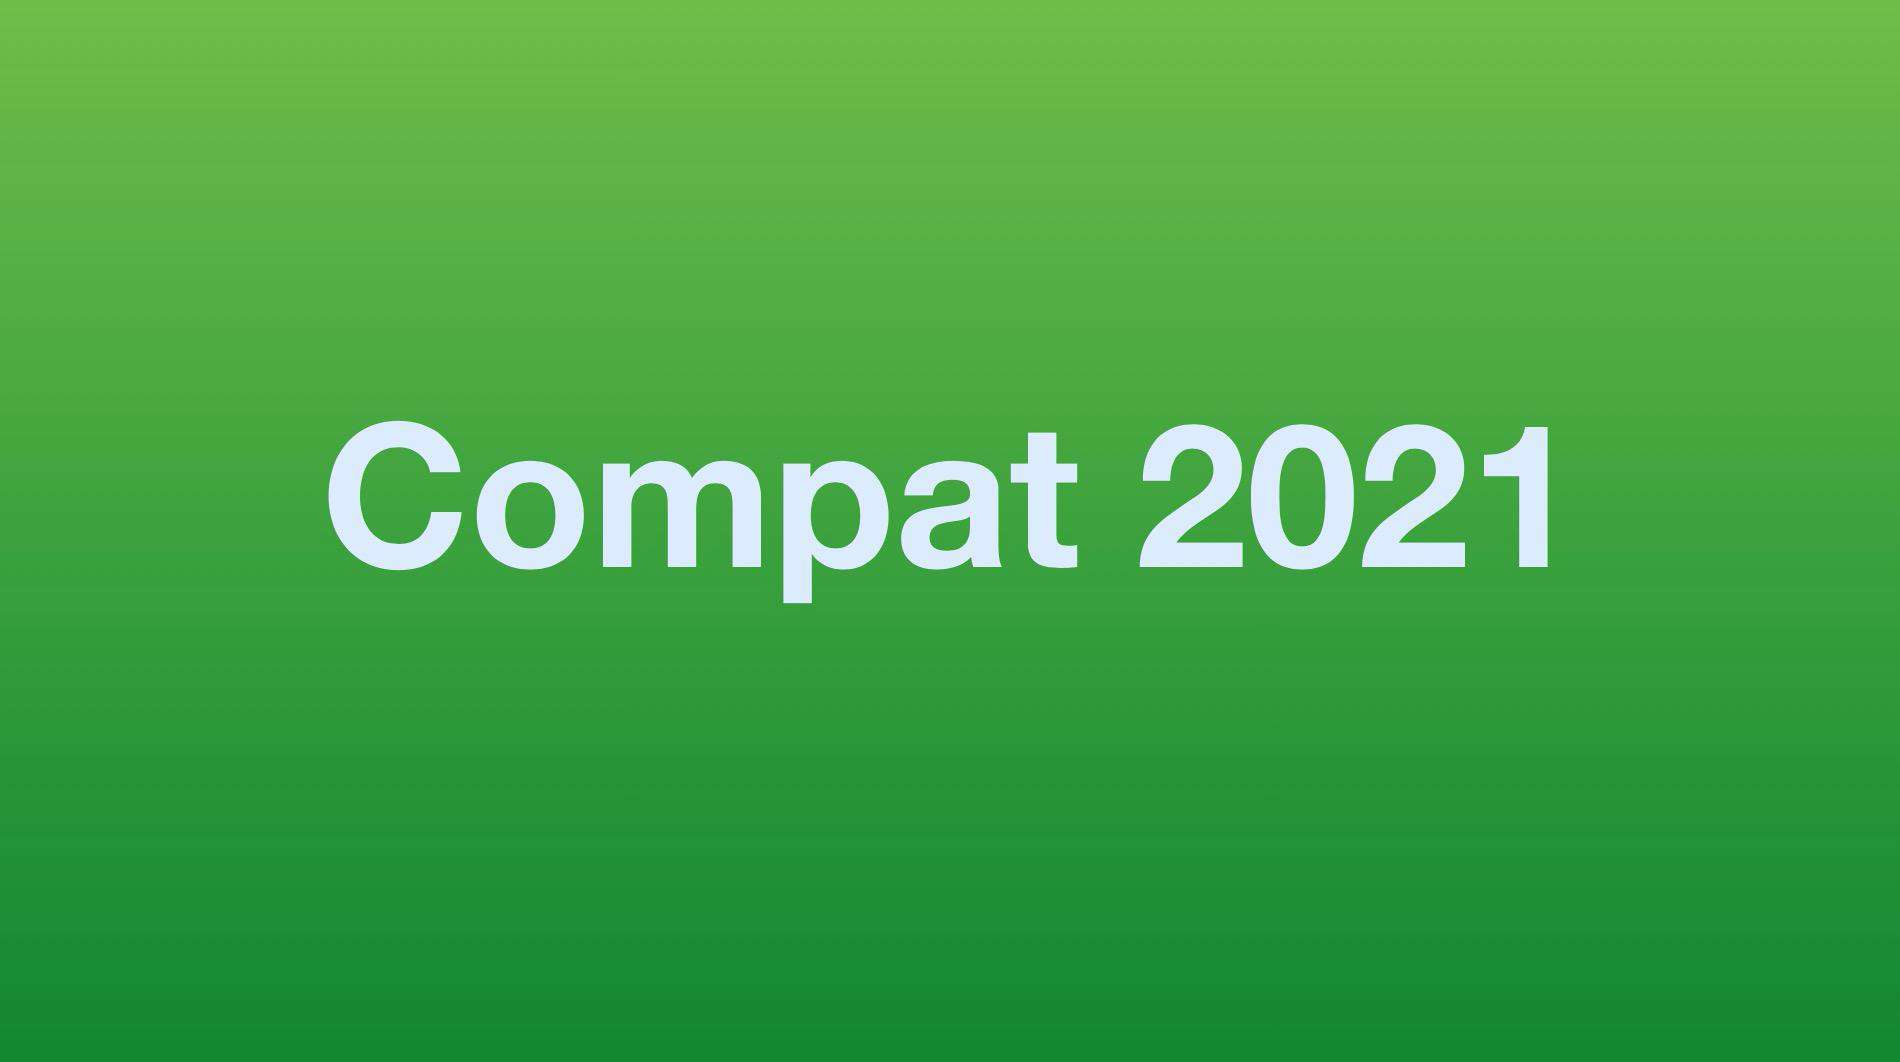 Chrome 牵头启动 Compat2021 计划 、Firefox 87 发布